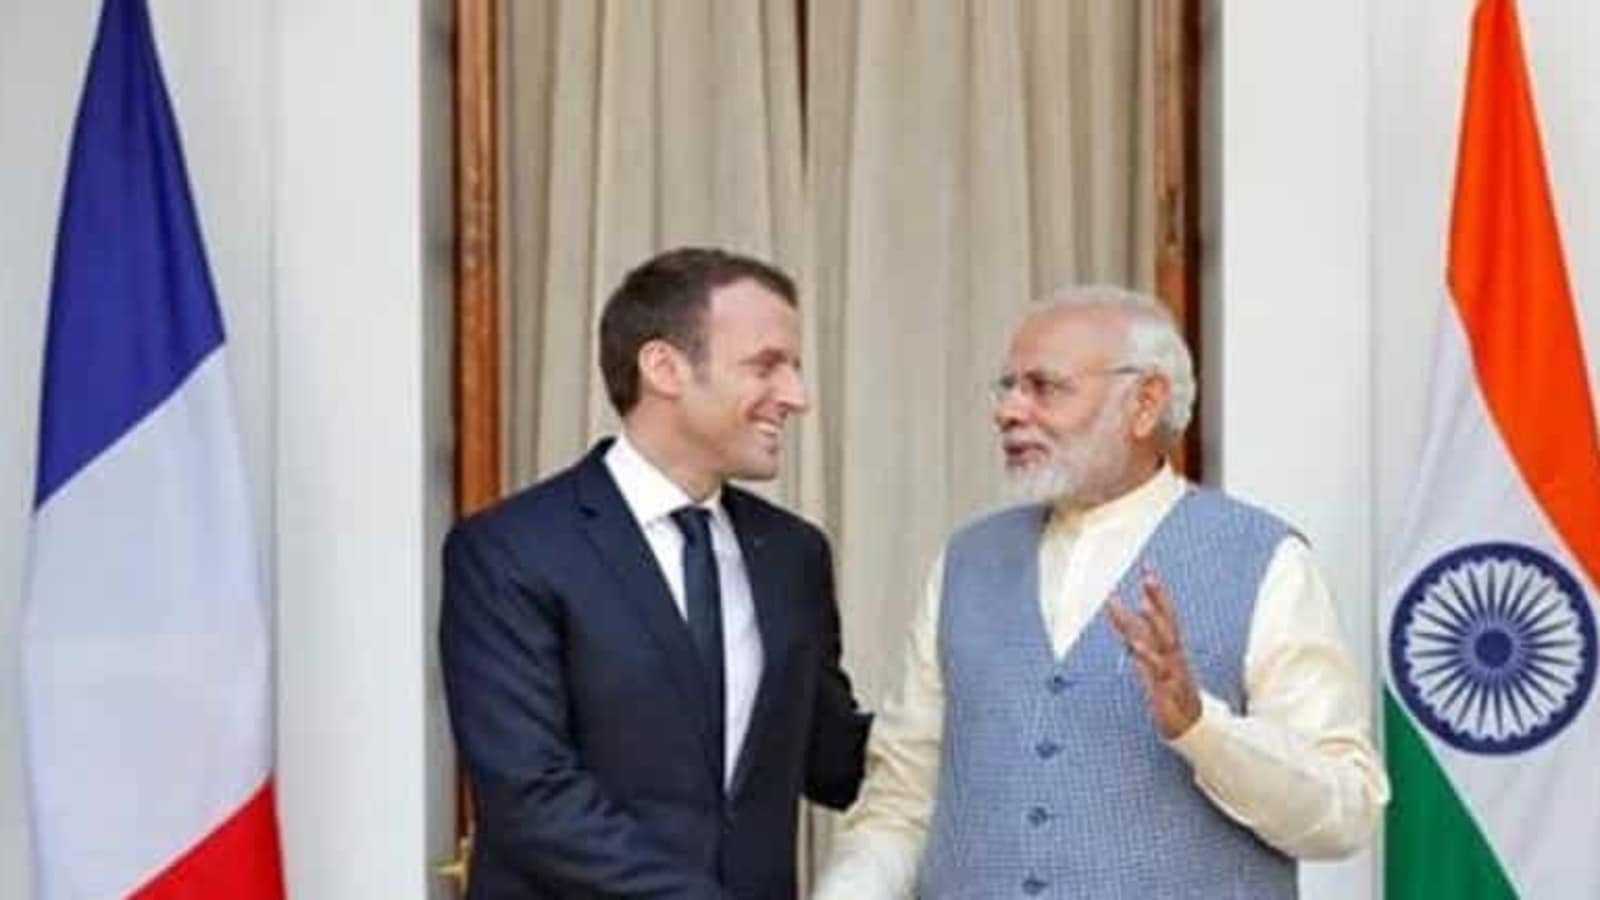 Le Premier ministre Modi effectue une visite de haut niveau en France après le sommet Inde-Union européenne au Portugal